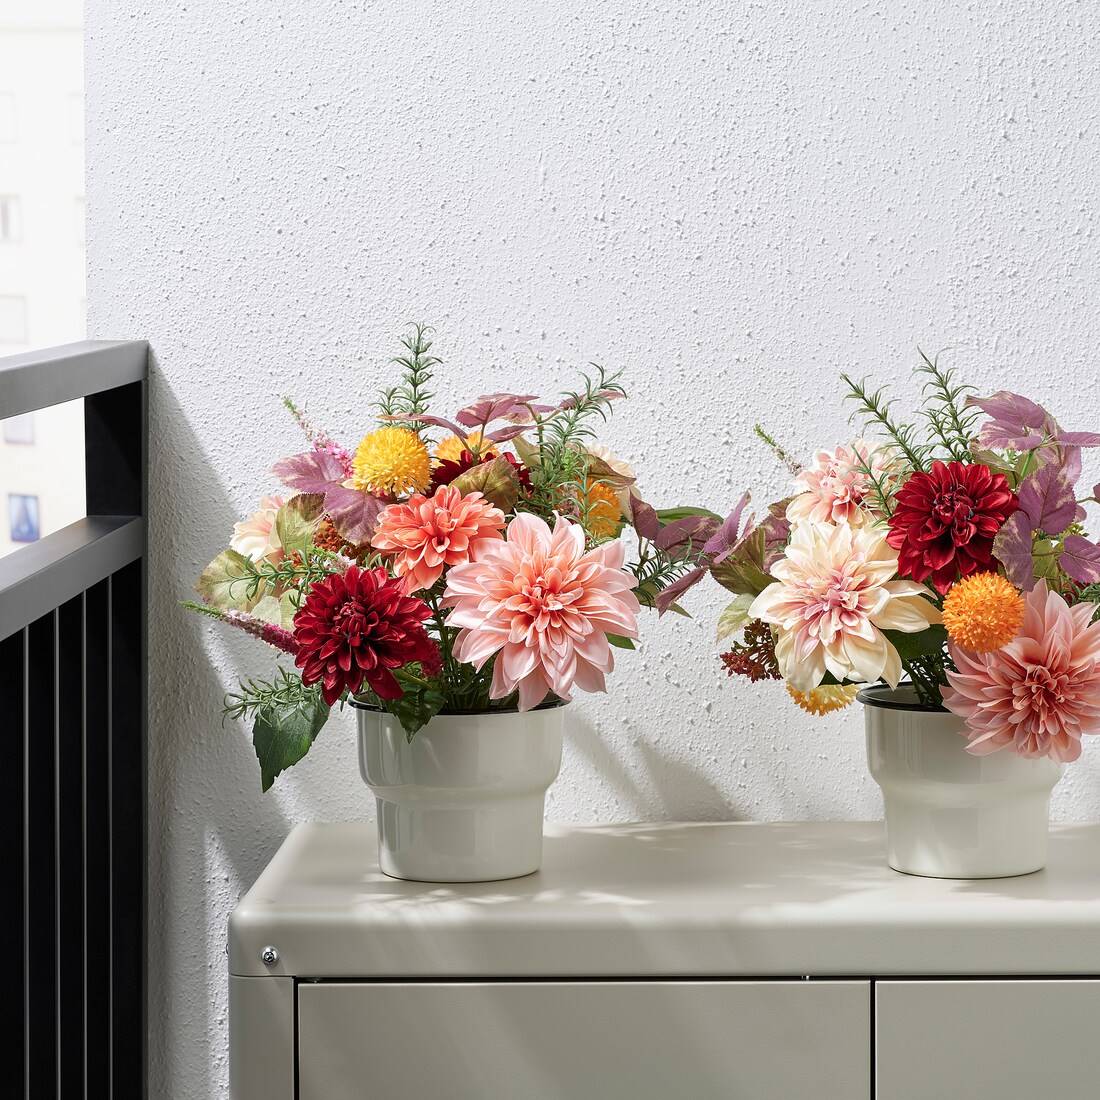 Plantas y flores artificiales muy decorativas para añadir en casa